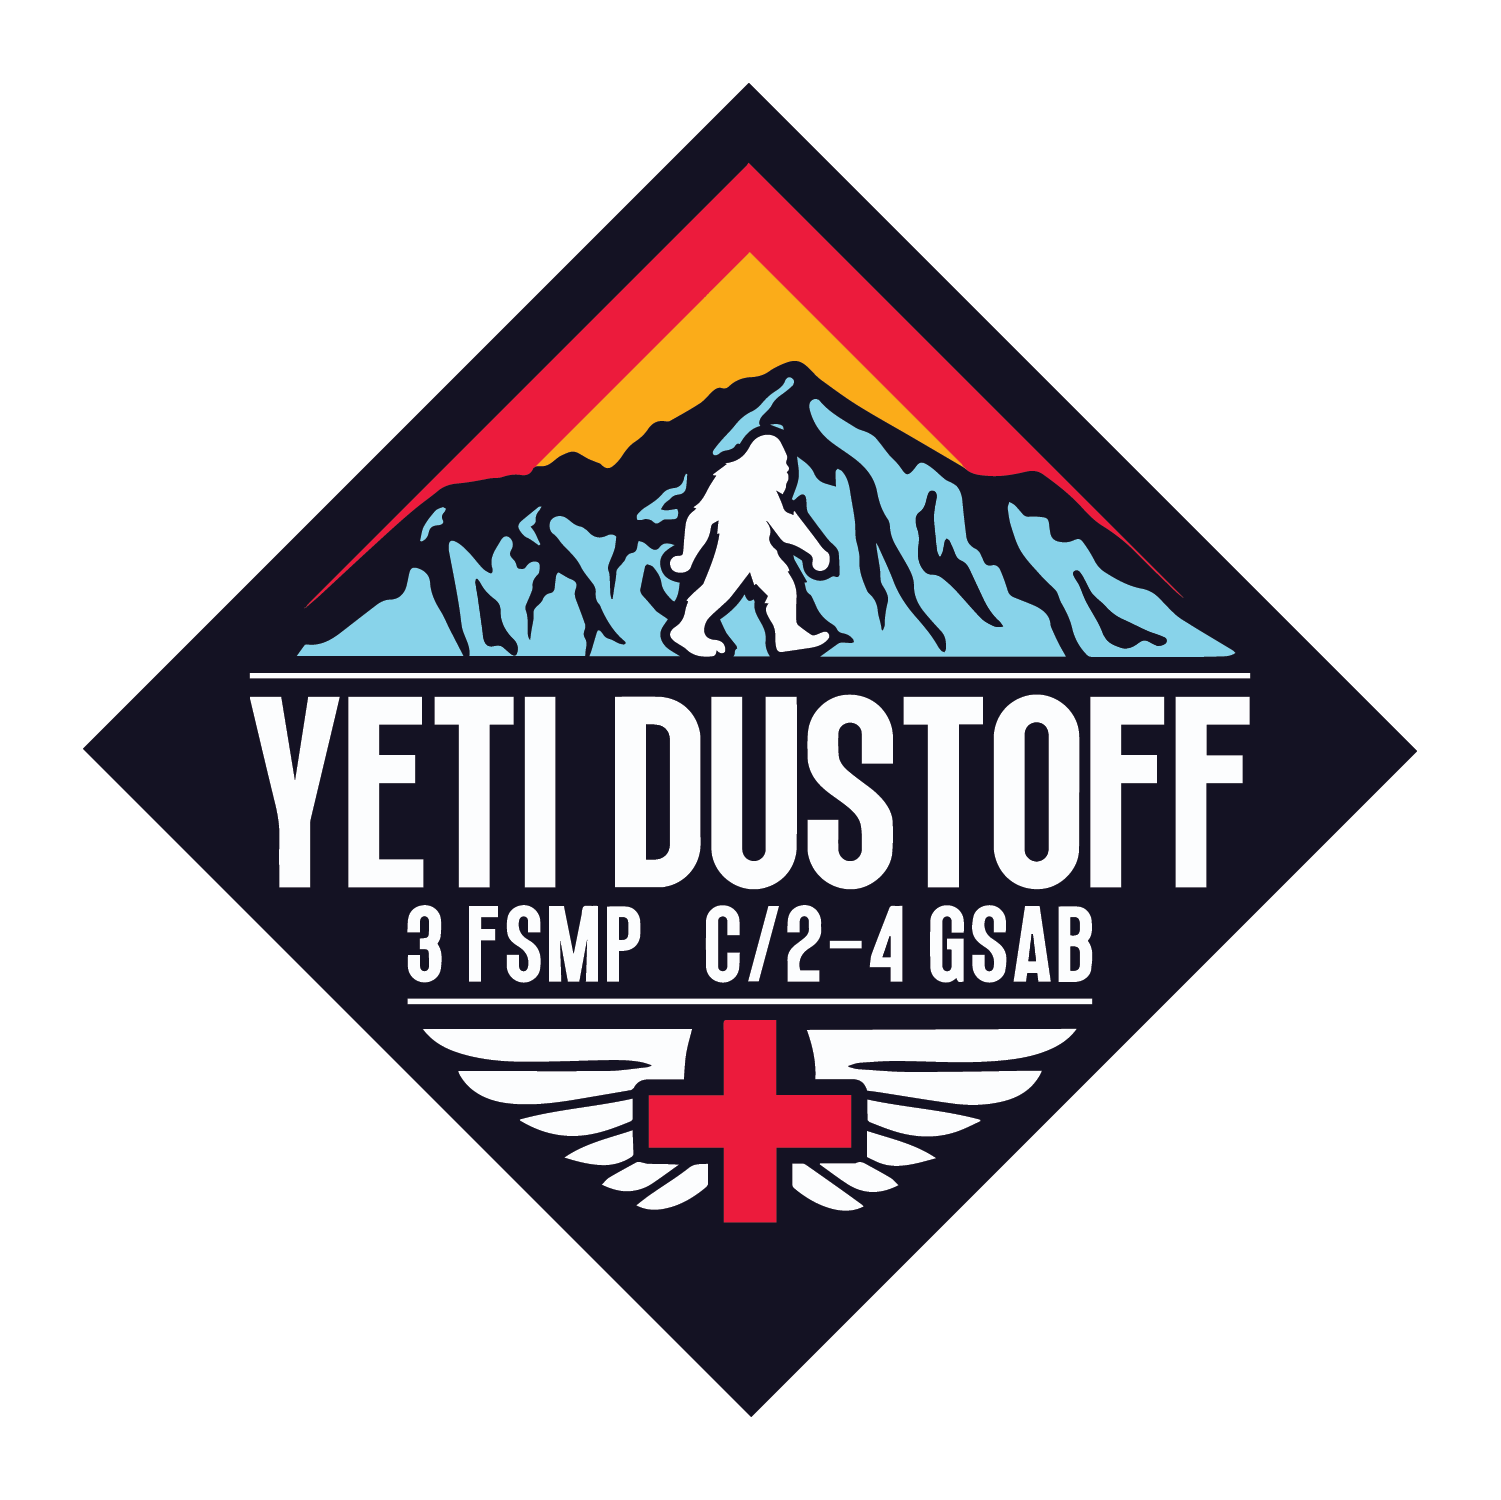 3 FSMP, C Co, 2-4 GSAB "Yeti Dustoff"